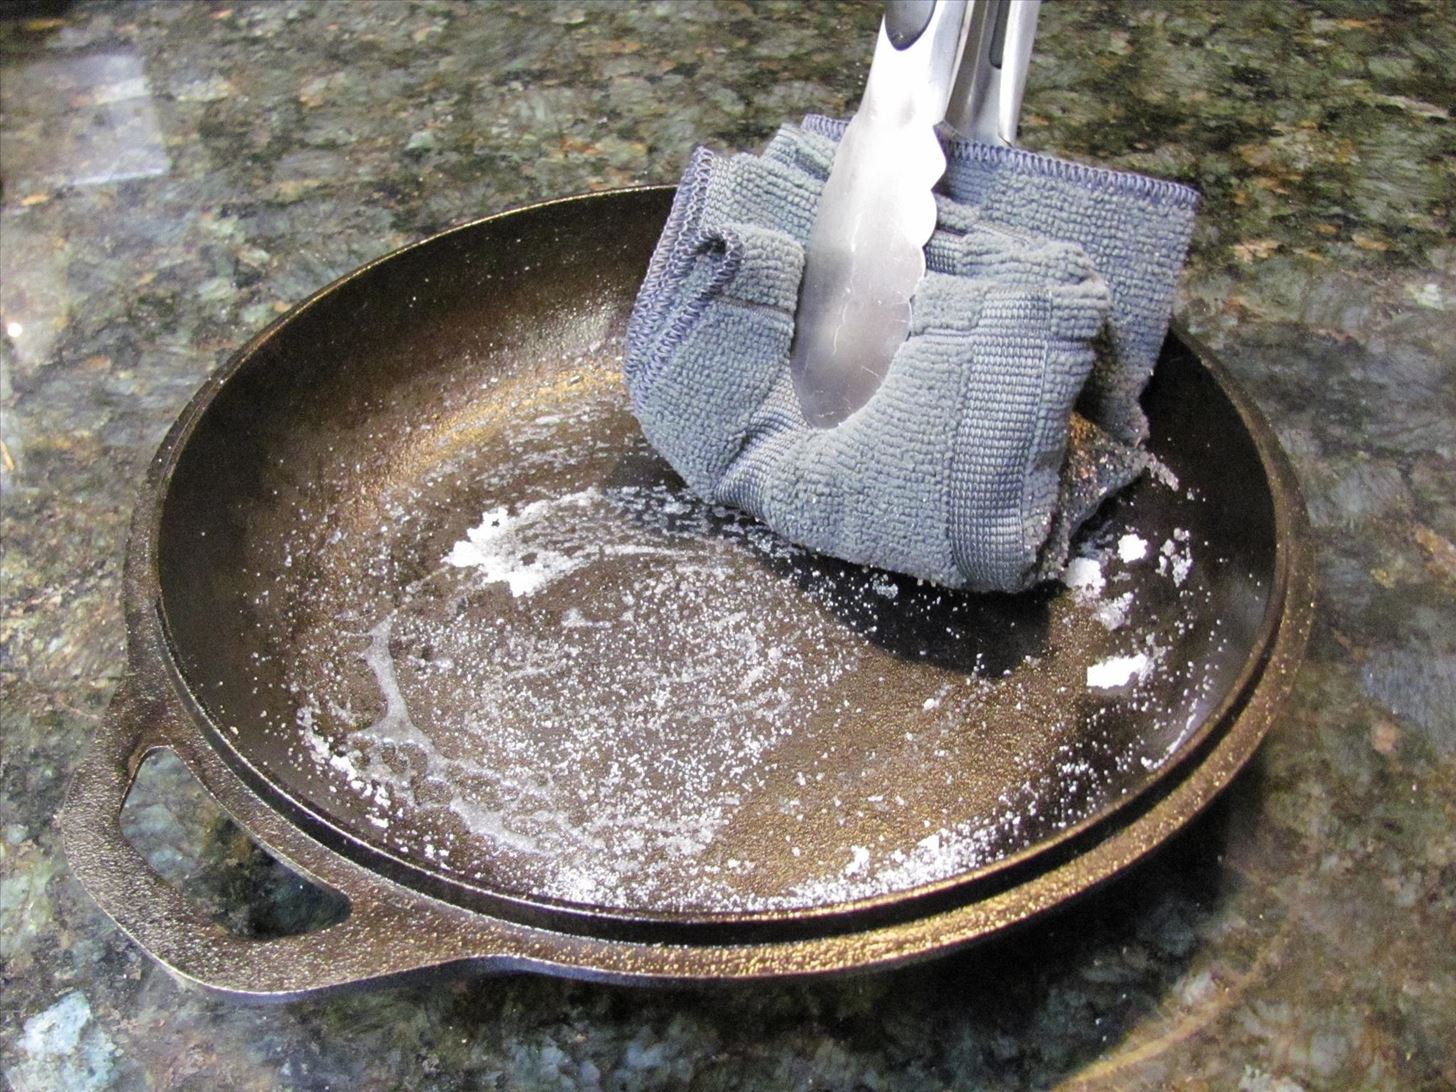 Топ-10 способов очистить пригоревшую кастрюлю